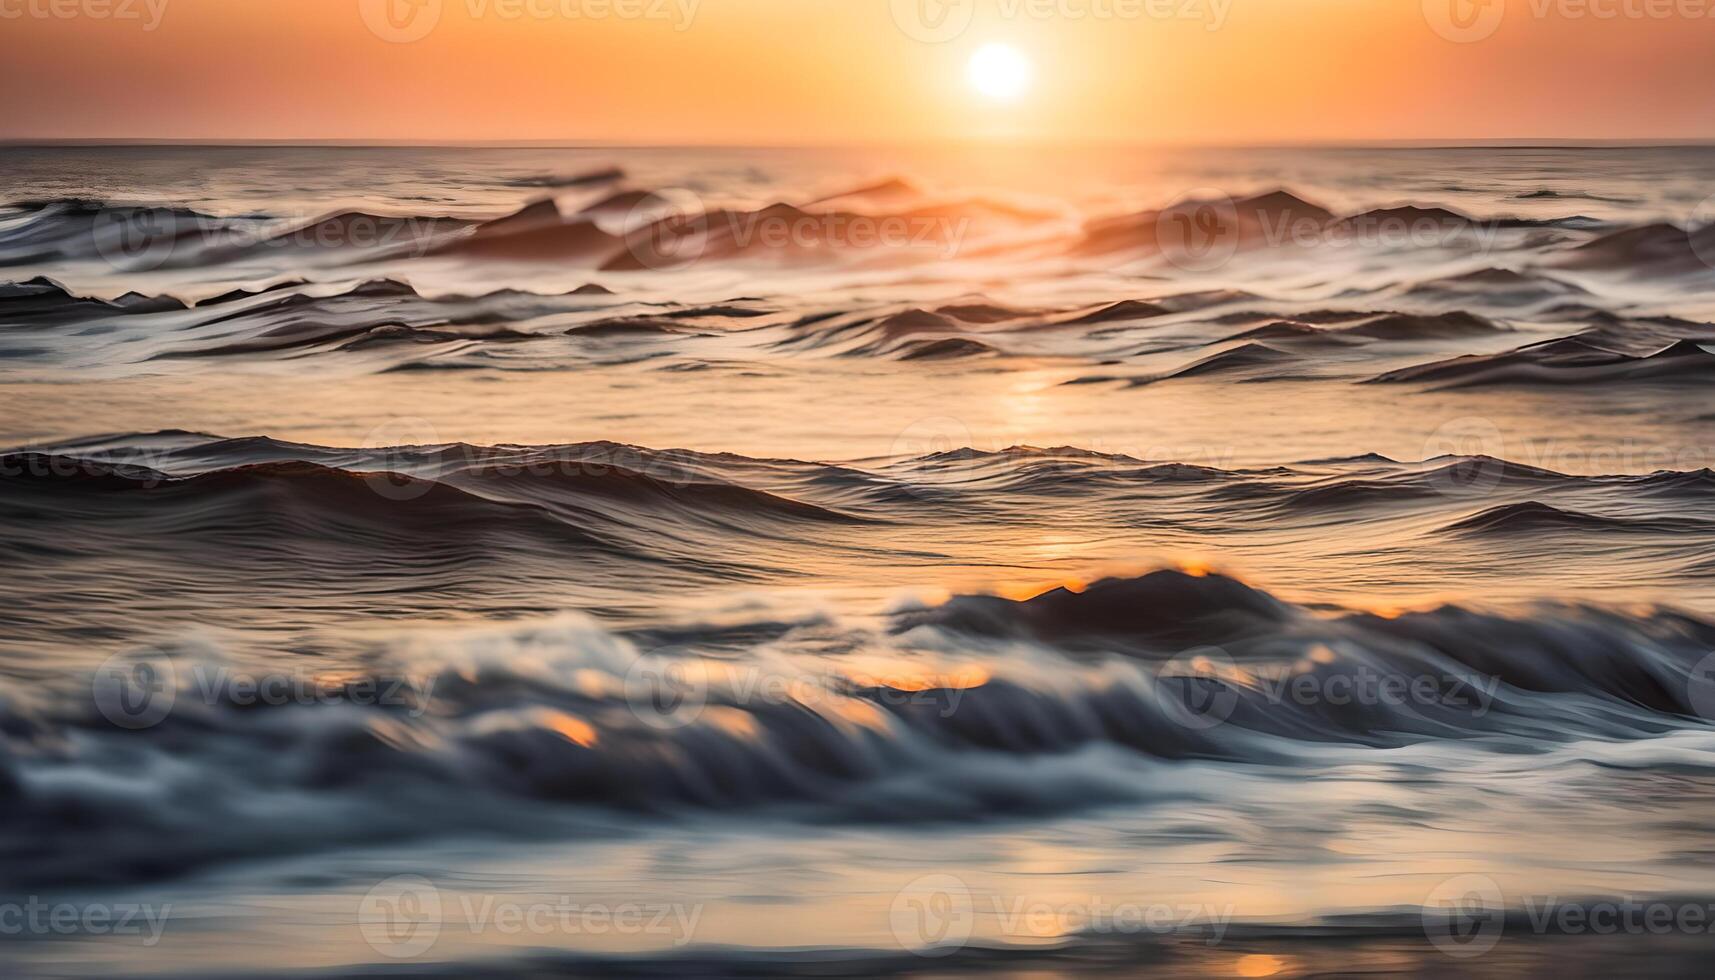 AI generated beautiful ocean sunrise photo